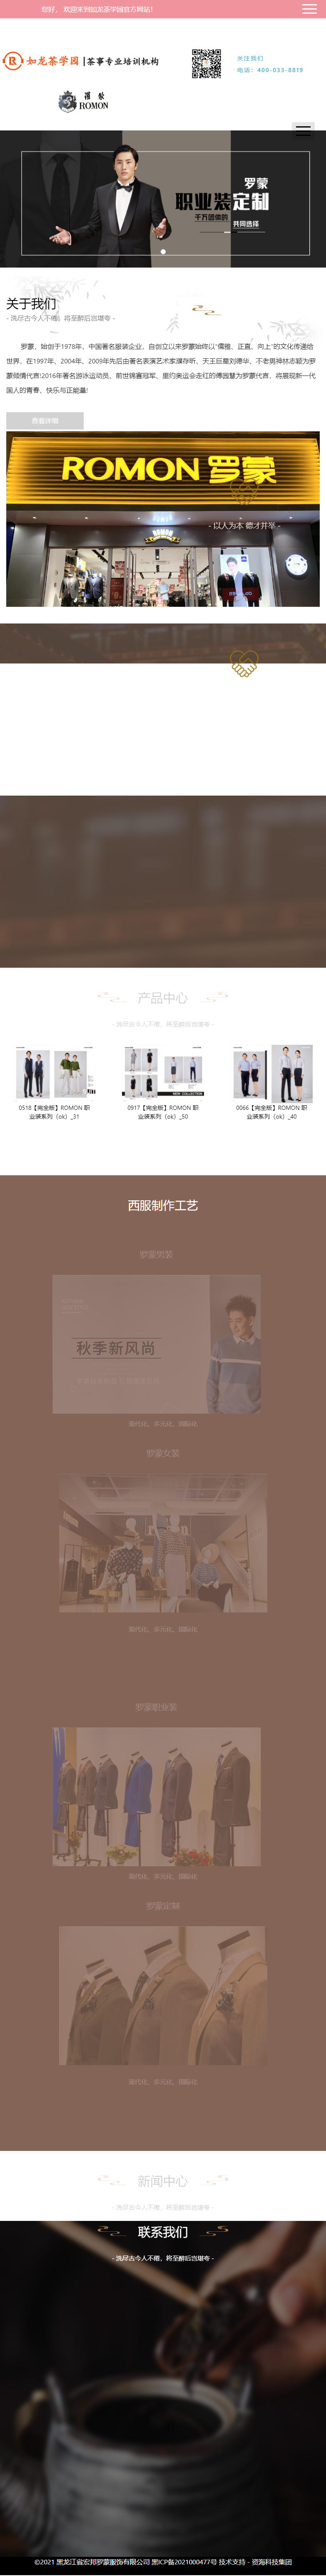 黑龙江省宏邦服饰有限公司网站案例